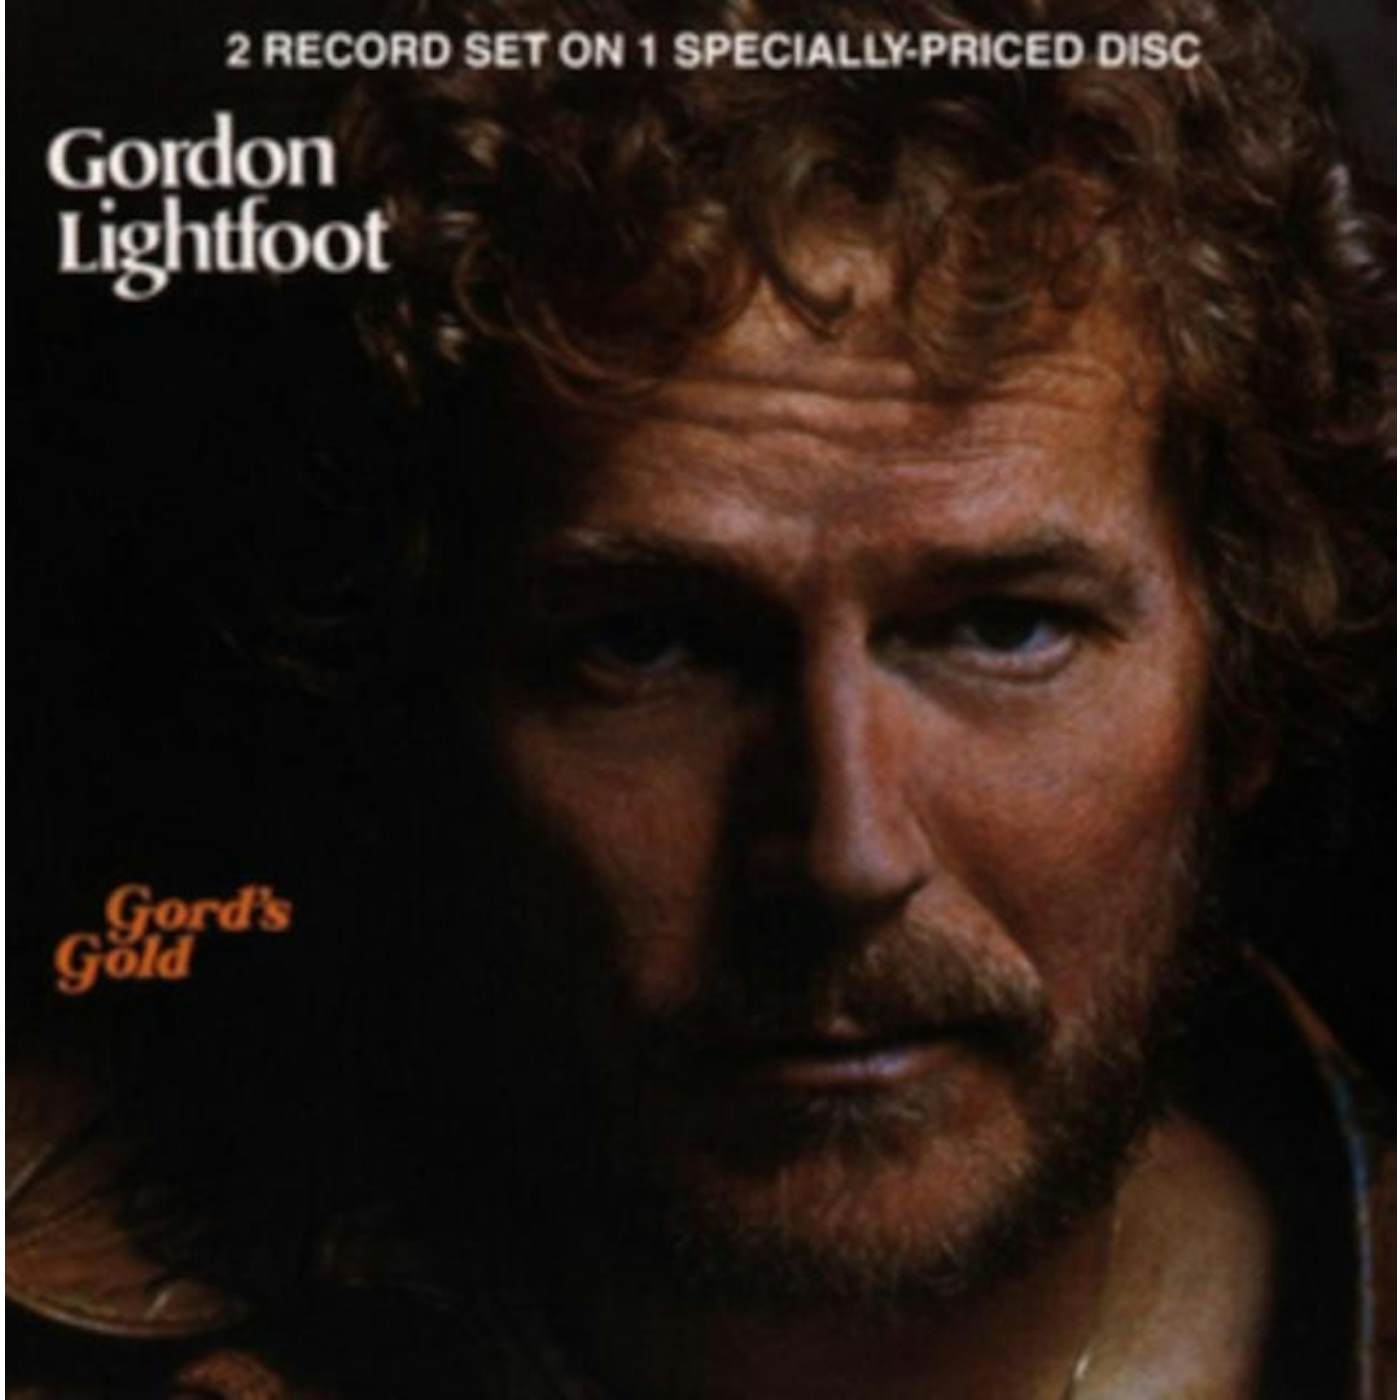 Gordon Lightfoot CD - Gord's Gold